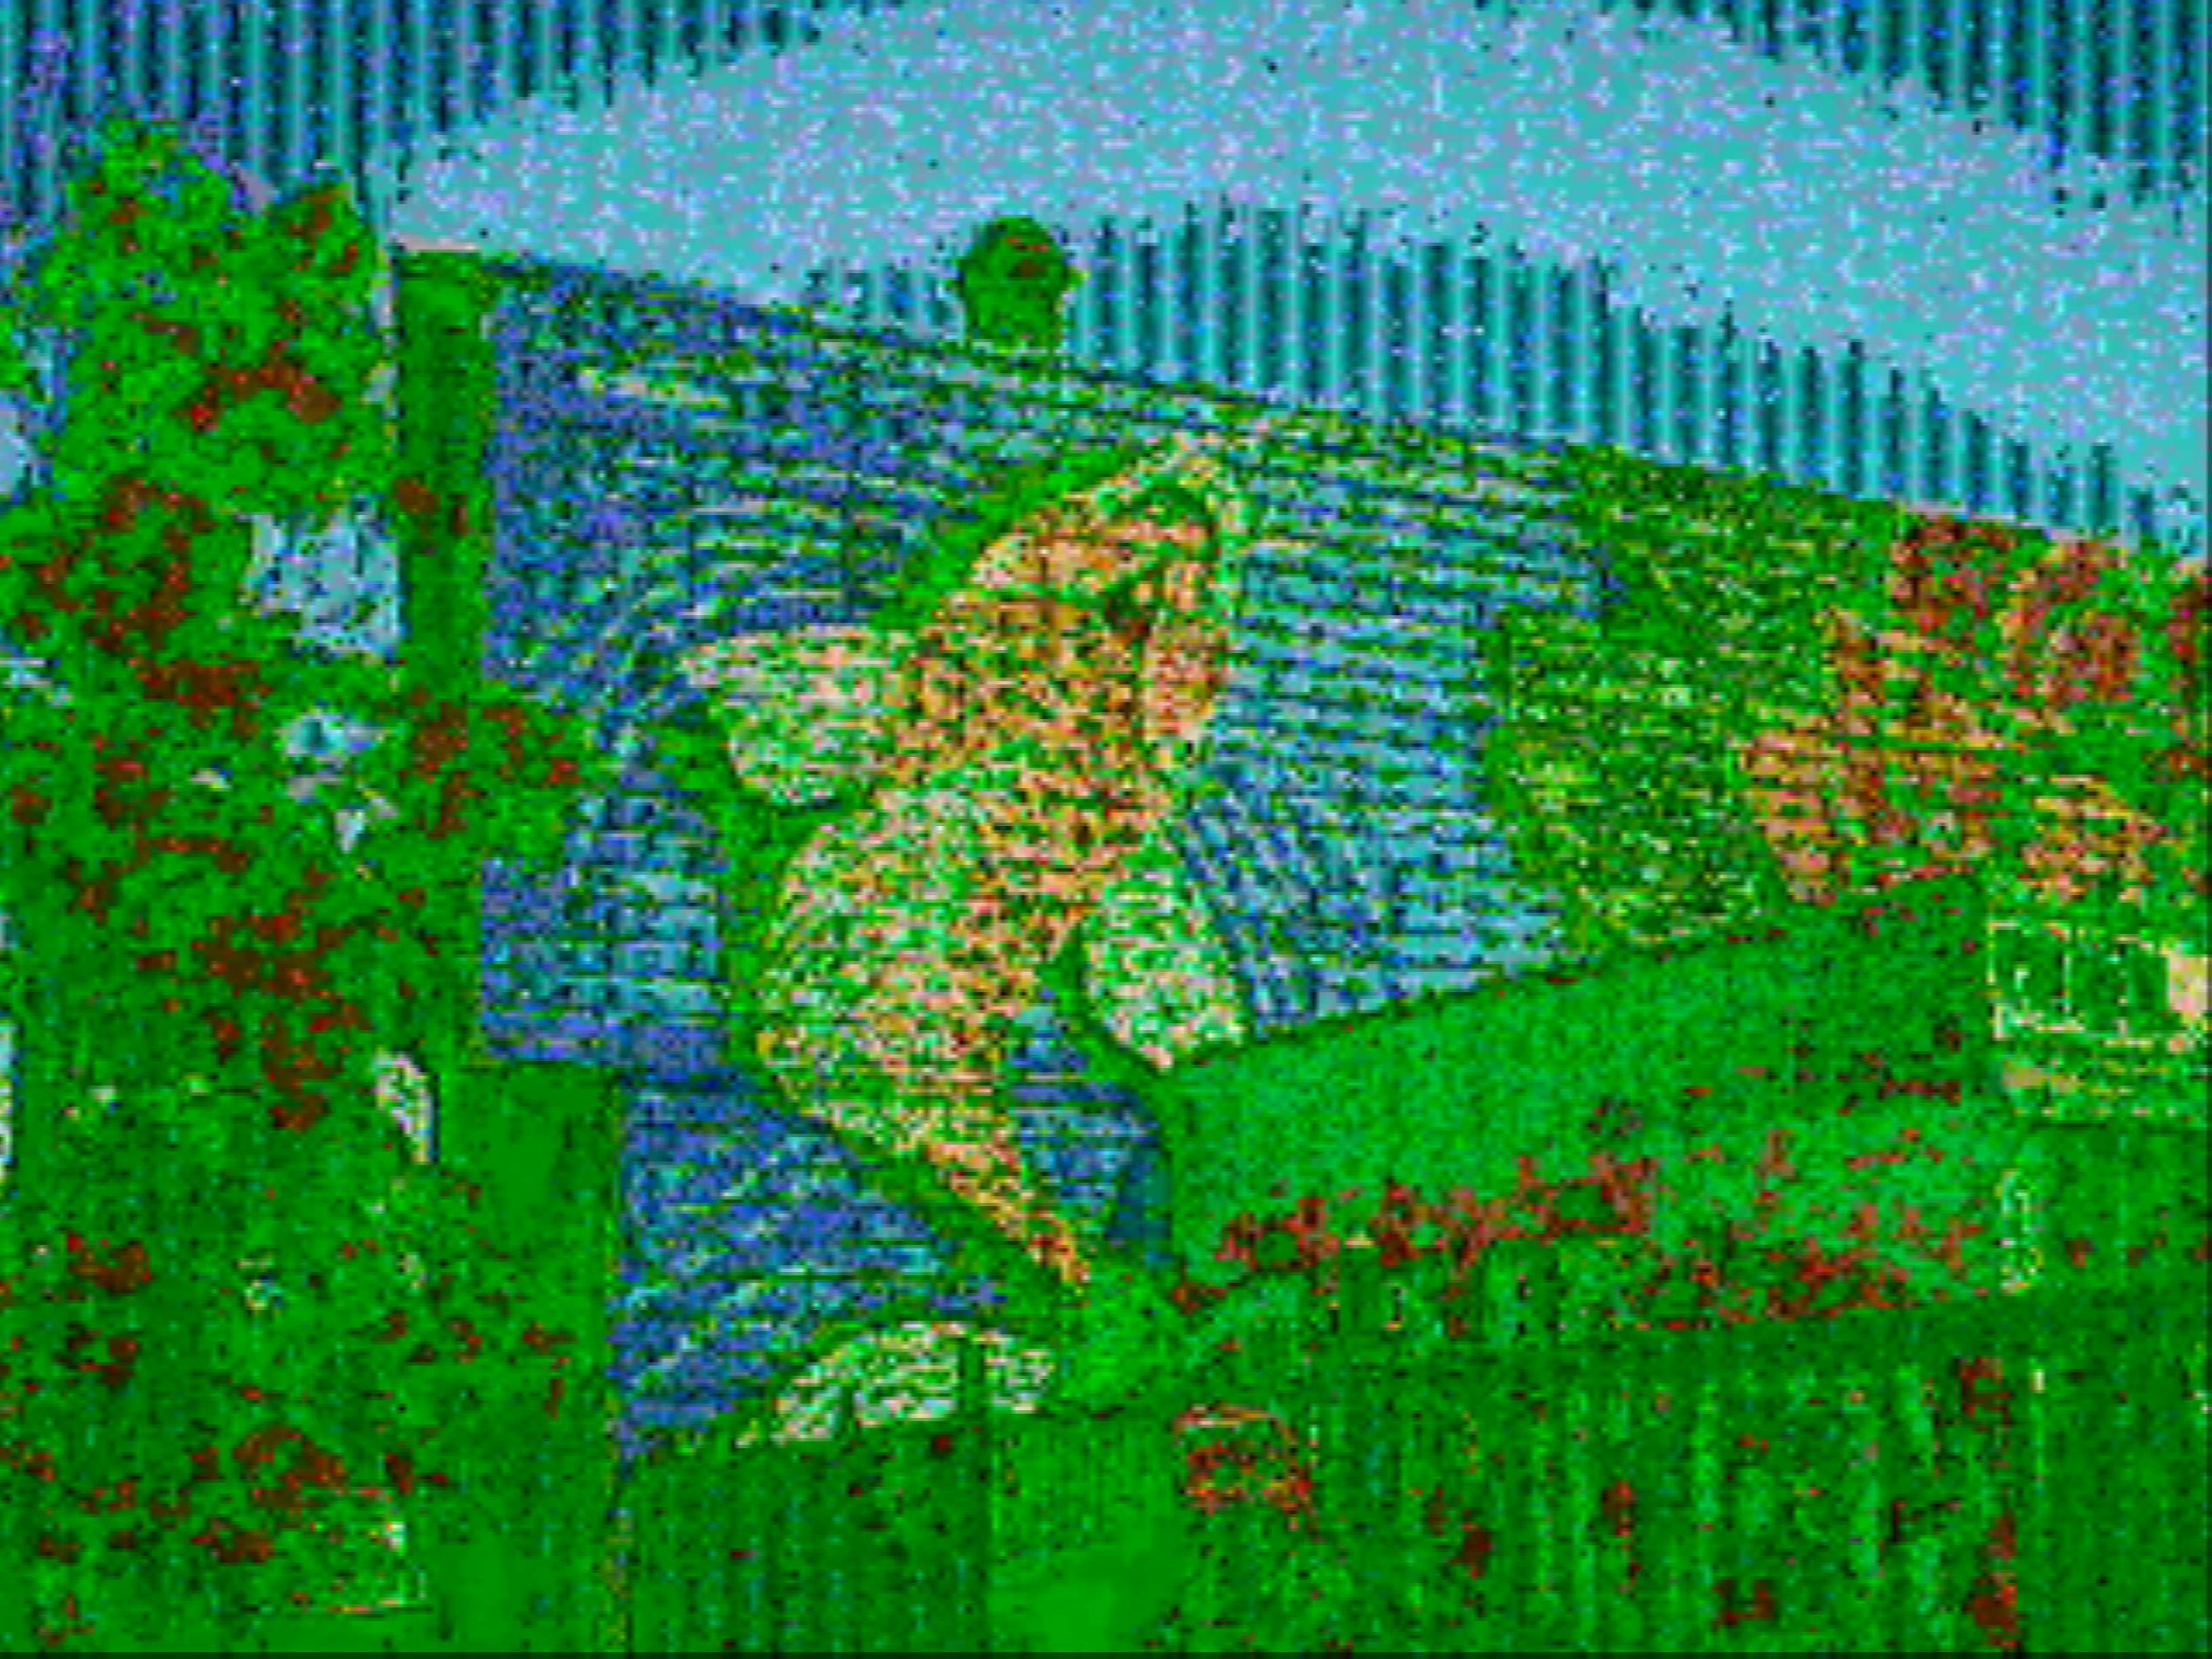 A sample glitch camera image taken of a graffiti koi fish mural